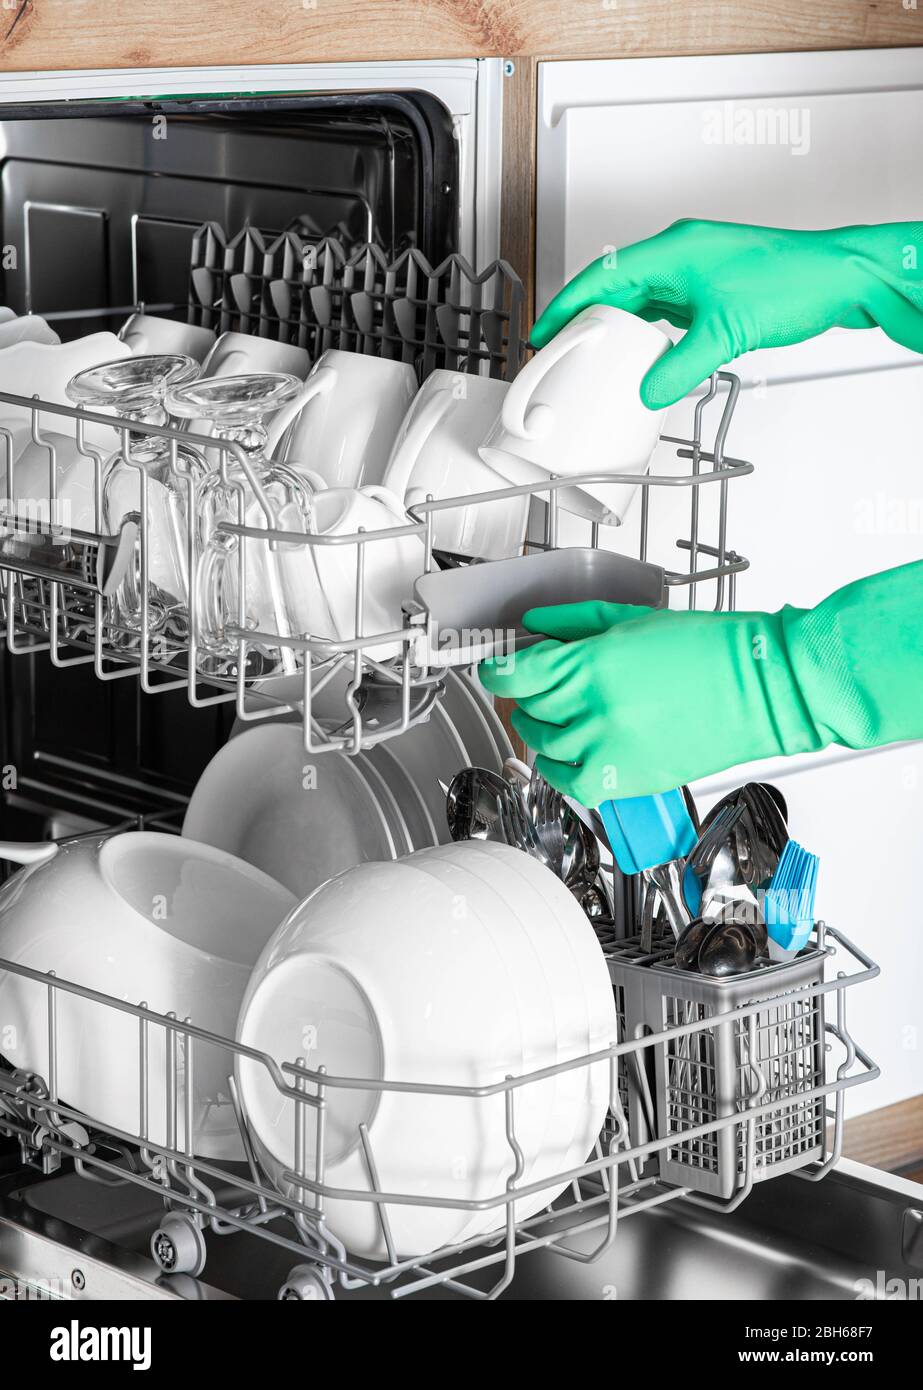 La main féminine courte permet de retirer les plats propres du lave-vaisselle. Vaisselle parfaitement lavée. Lave-vaisselle intégré Banque D'Images